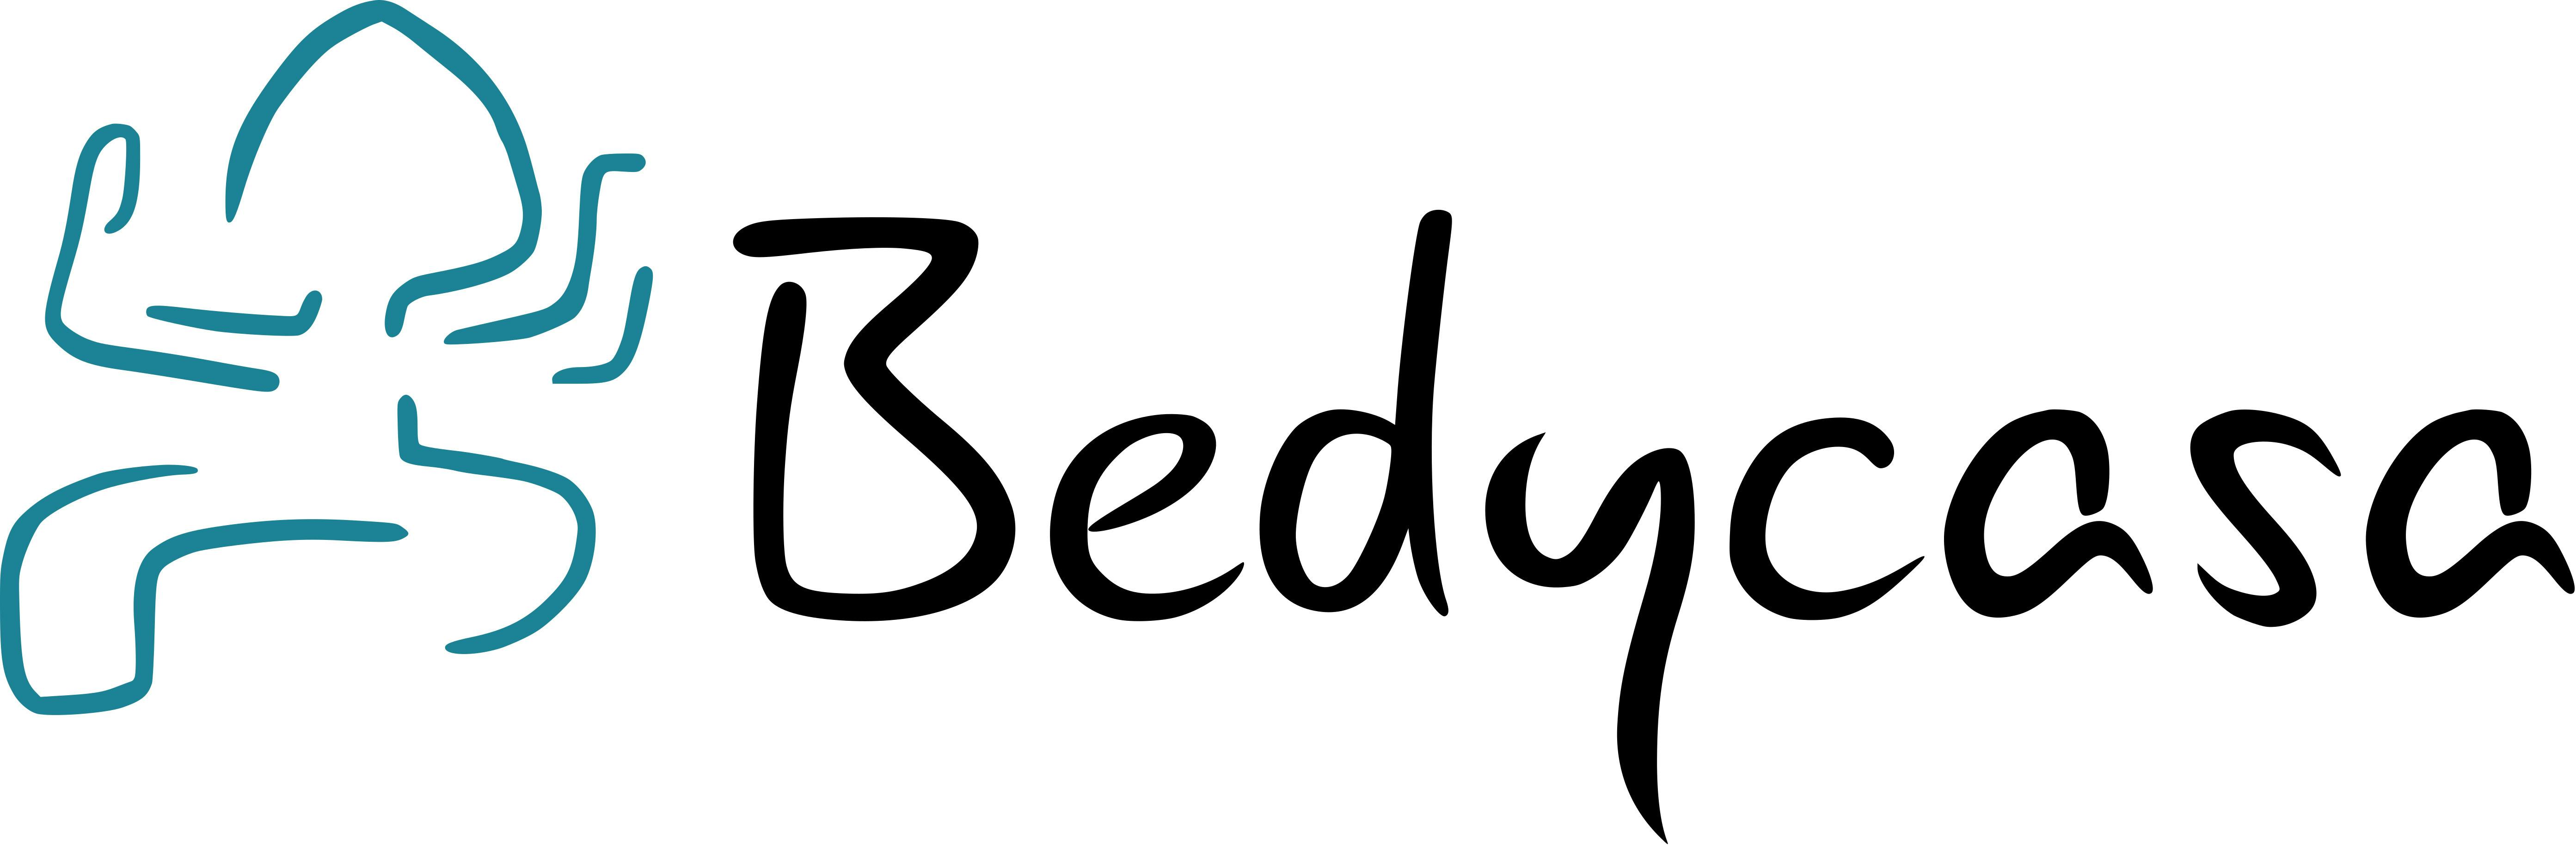 (c) Bedycasa.com